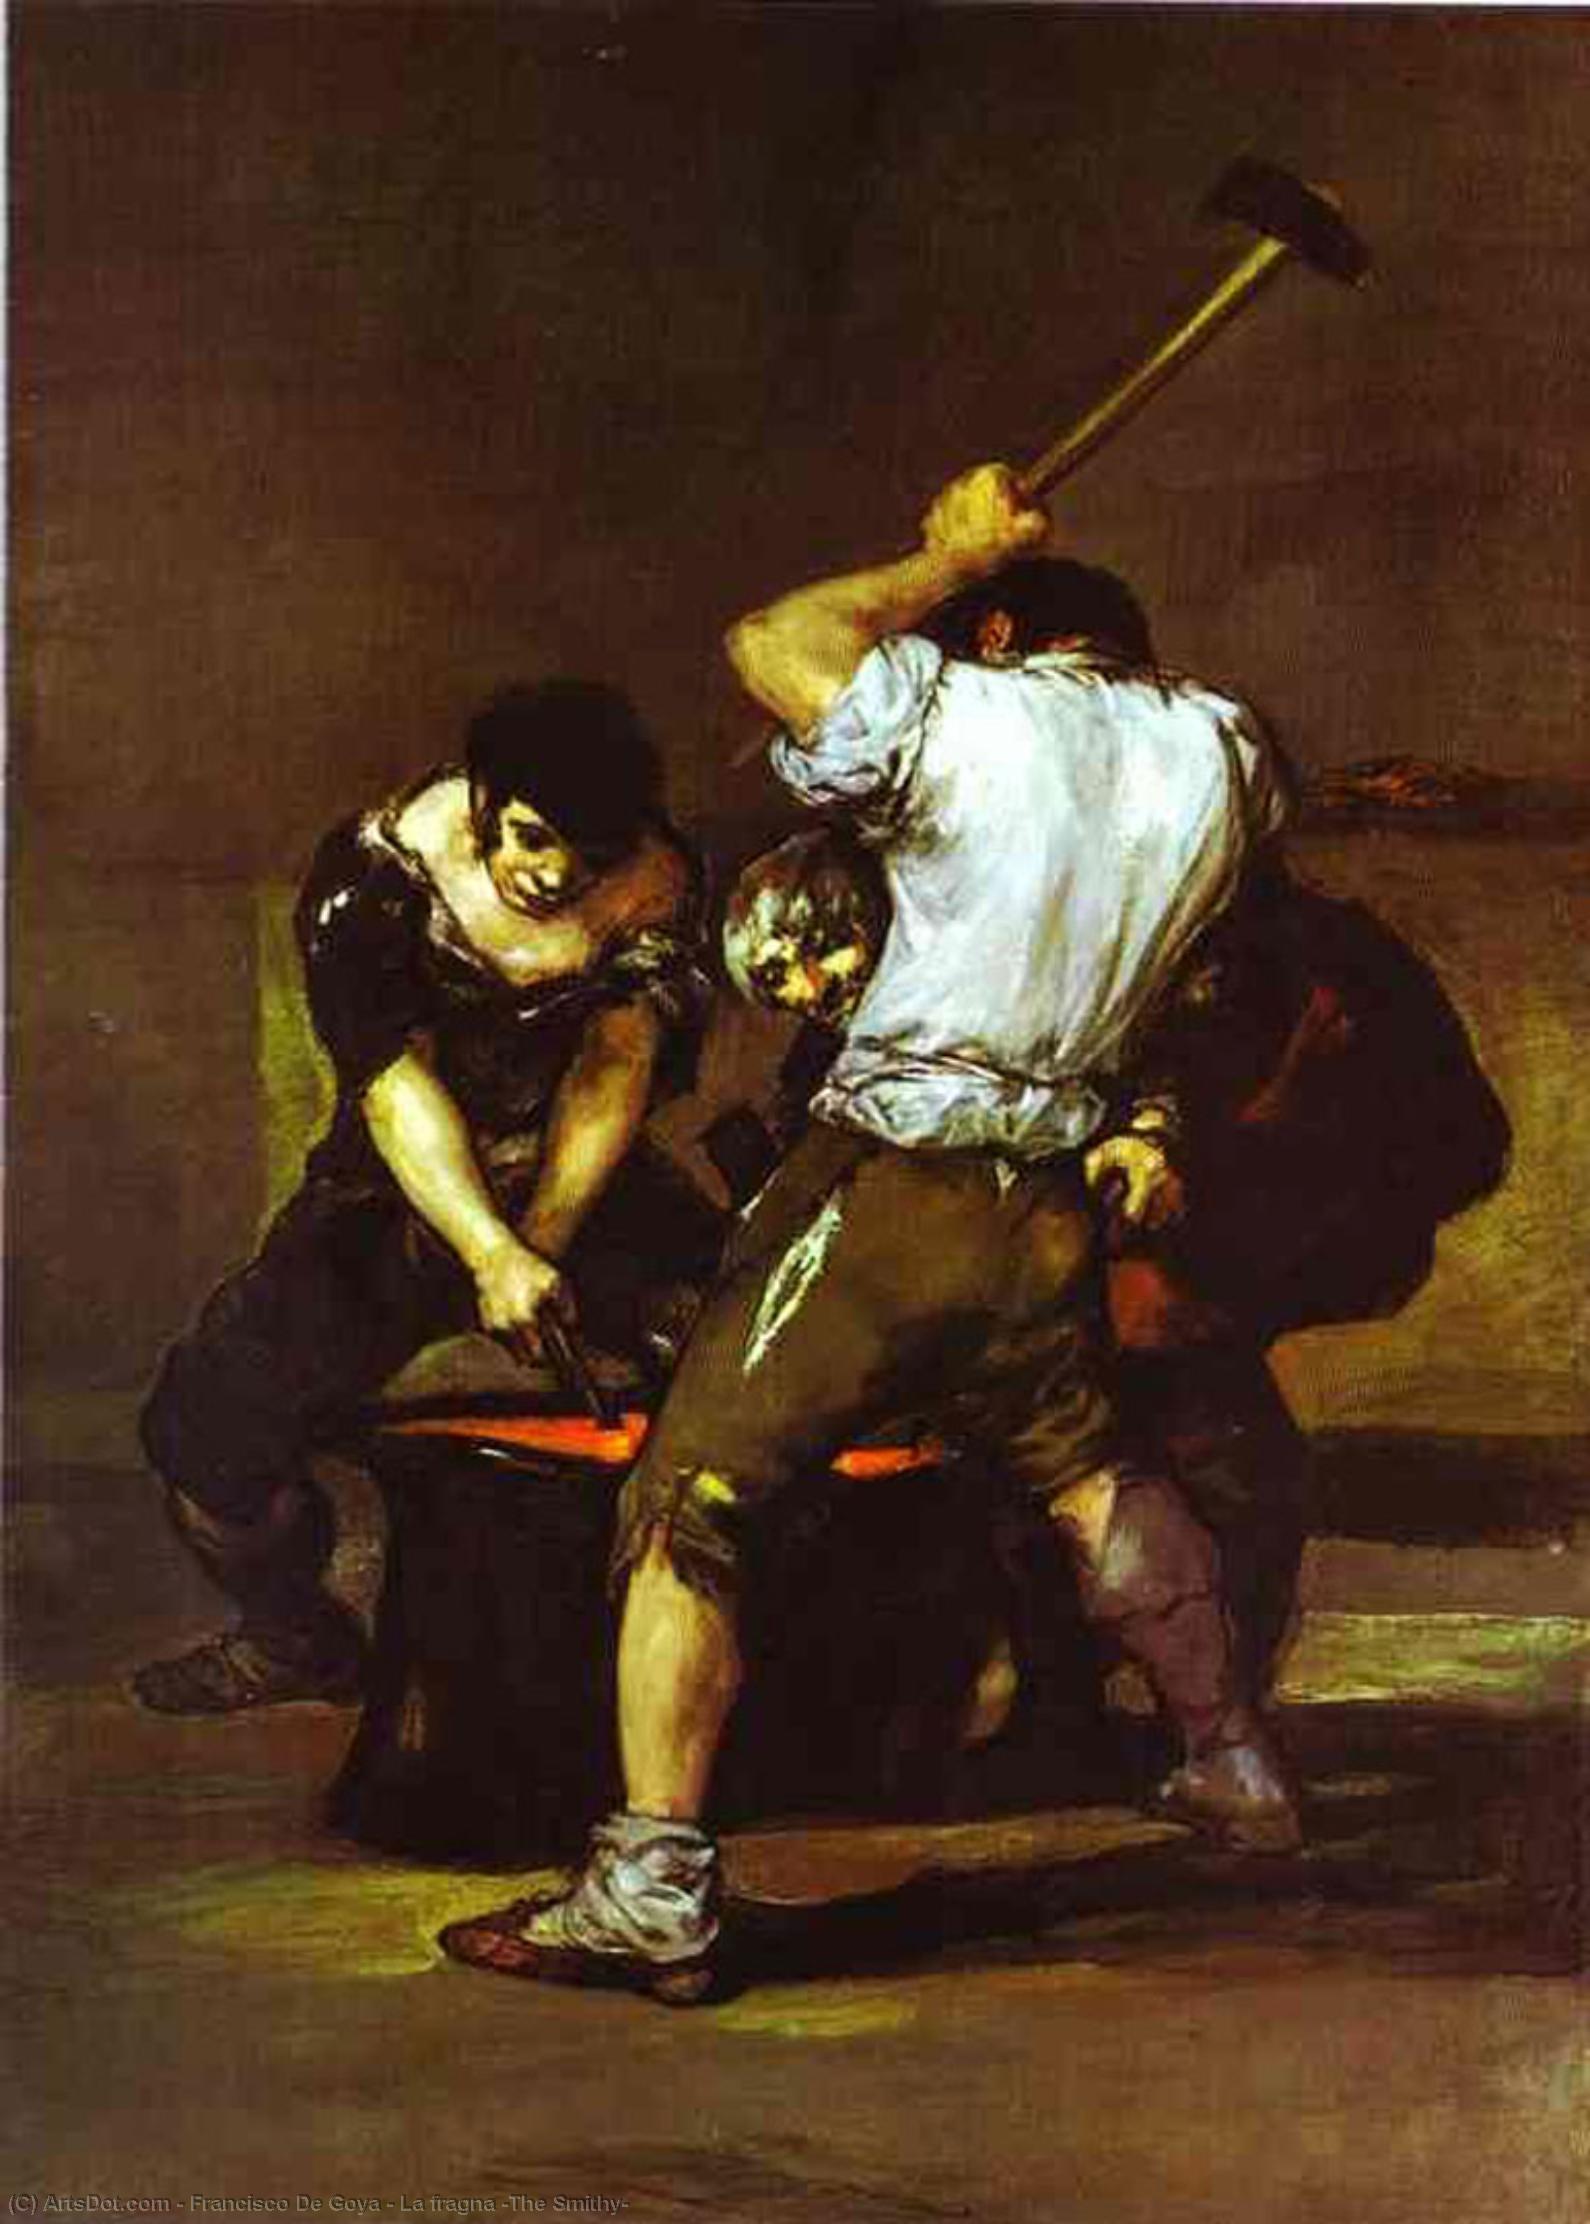 Wikoo.org - موسوعة الفنون الجميلة - اللوحة، العمل الفني Francisco De Goya - La fragna (The Smithy)